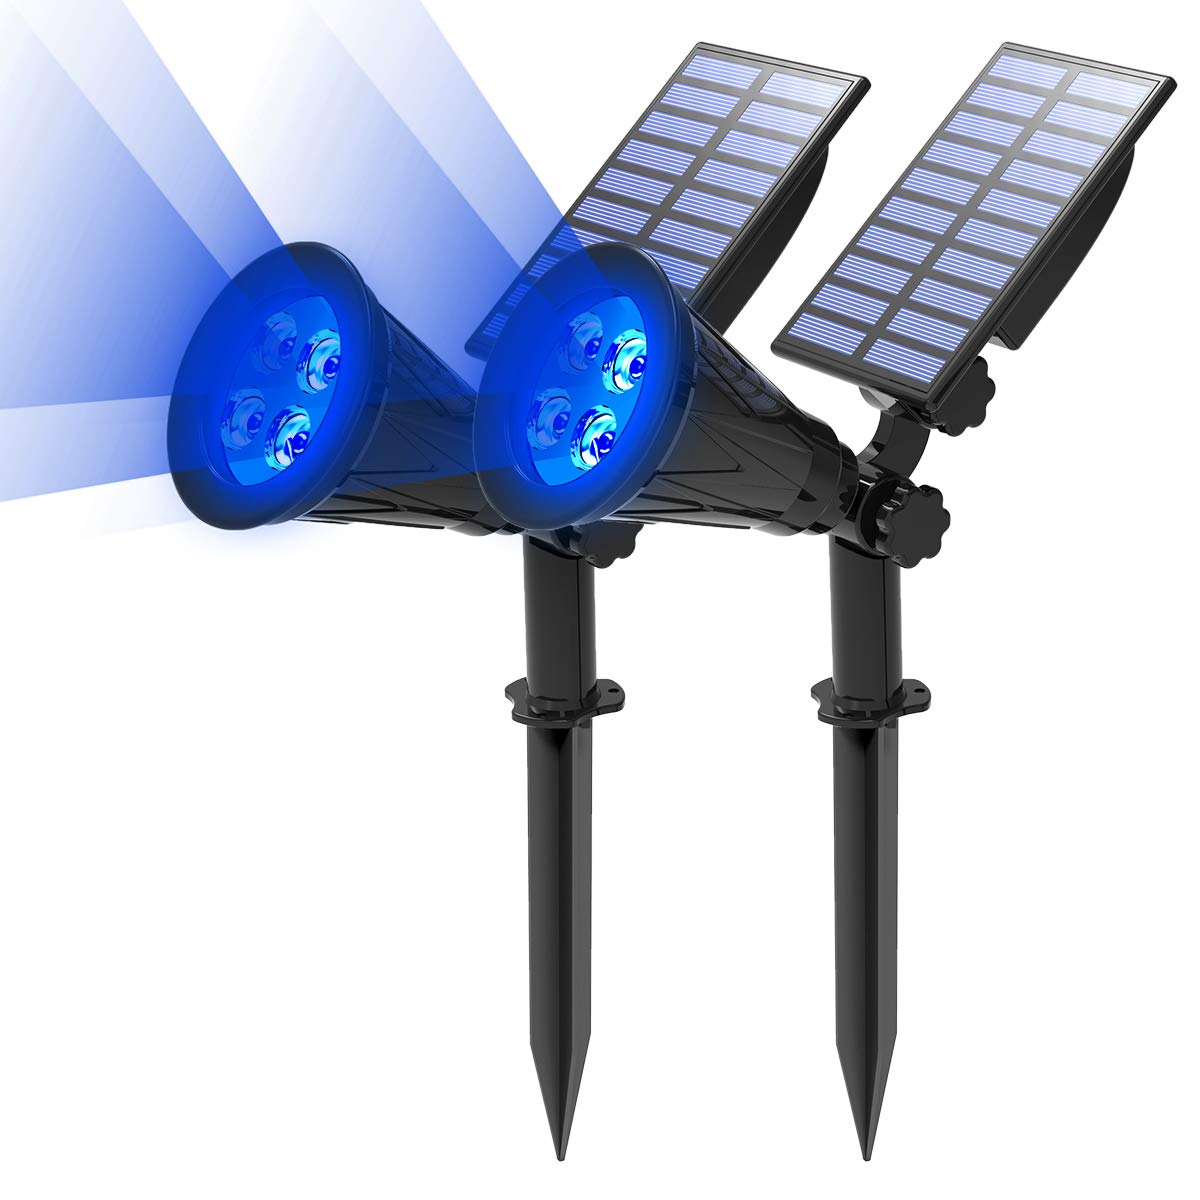 T-SUN 2 Stück LED Solarleuchten, 2-in-1 Wasserdicht Drahtlos Solarbetriebene Gartenleuchten, 2 Beleuchtungsmodi, Sicherheitsbeleuchtung, Outdoor Wandleuchte für Hof, Rasen, Wege, Auffahrt, Terrasse.